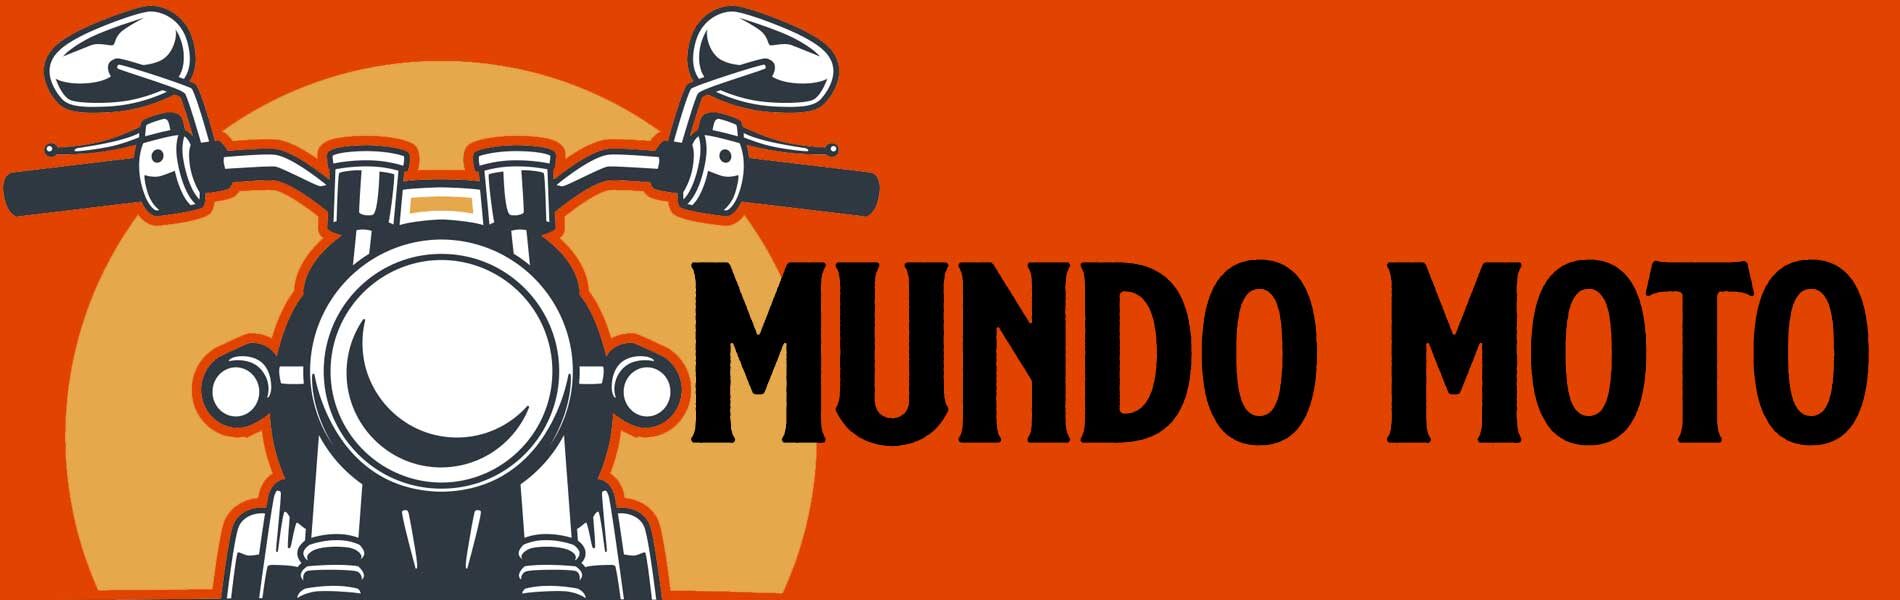 (c) Mundomoto.es